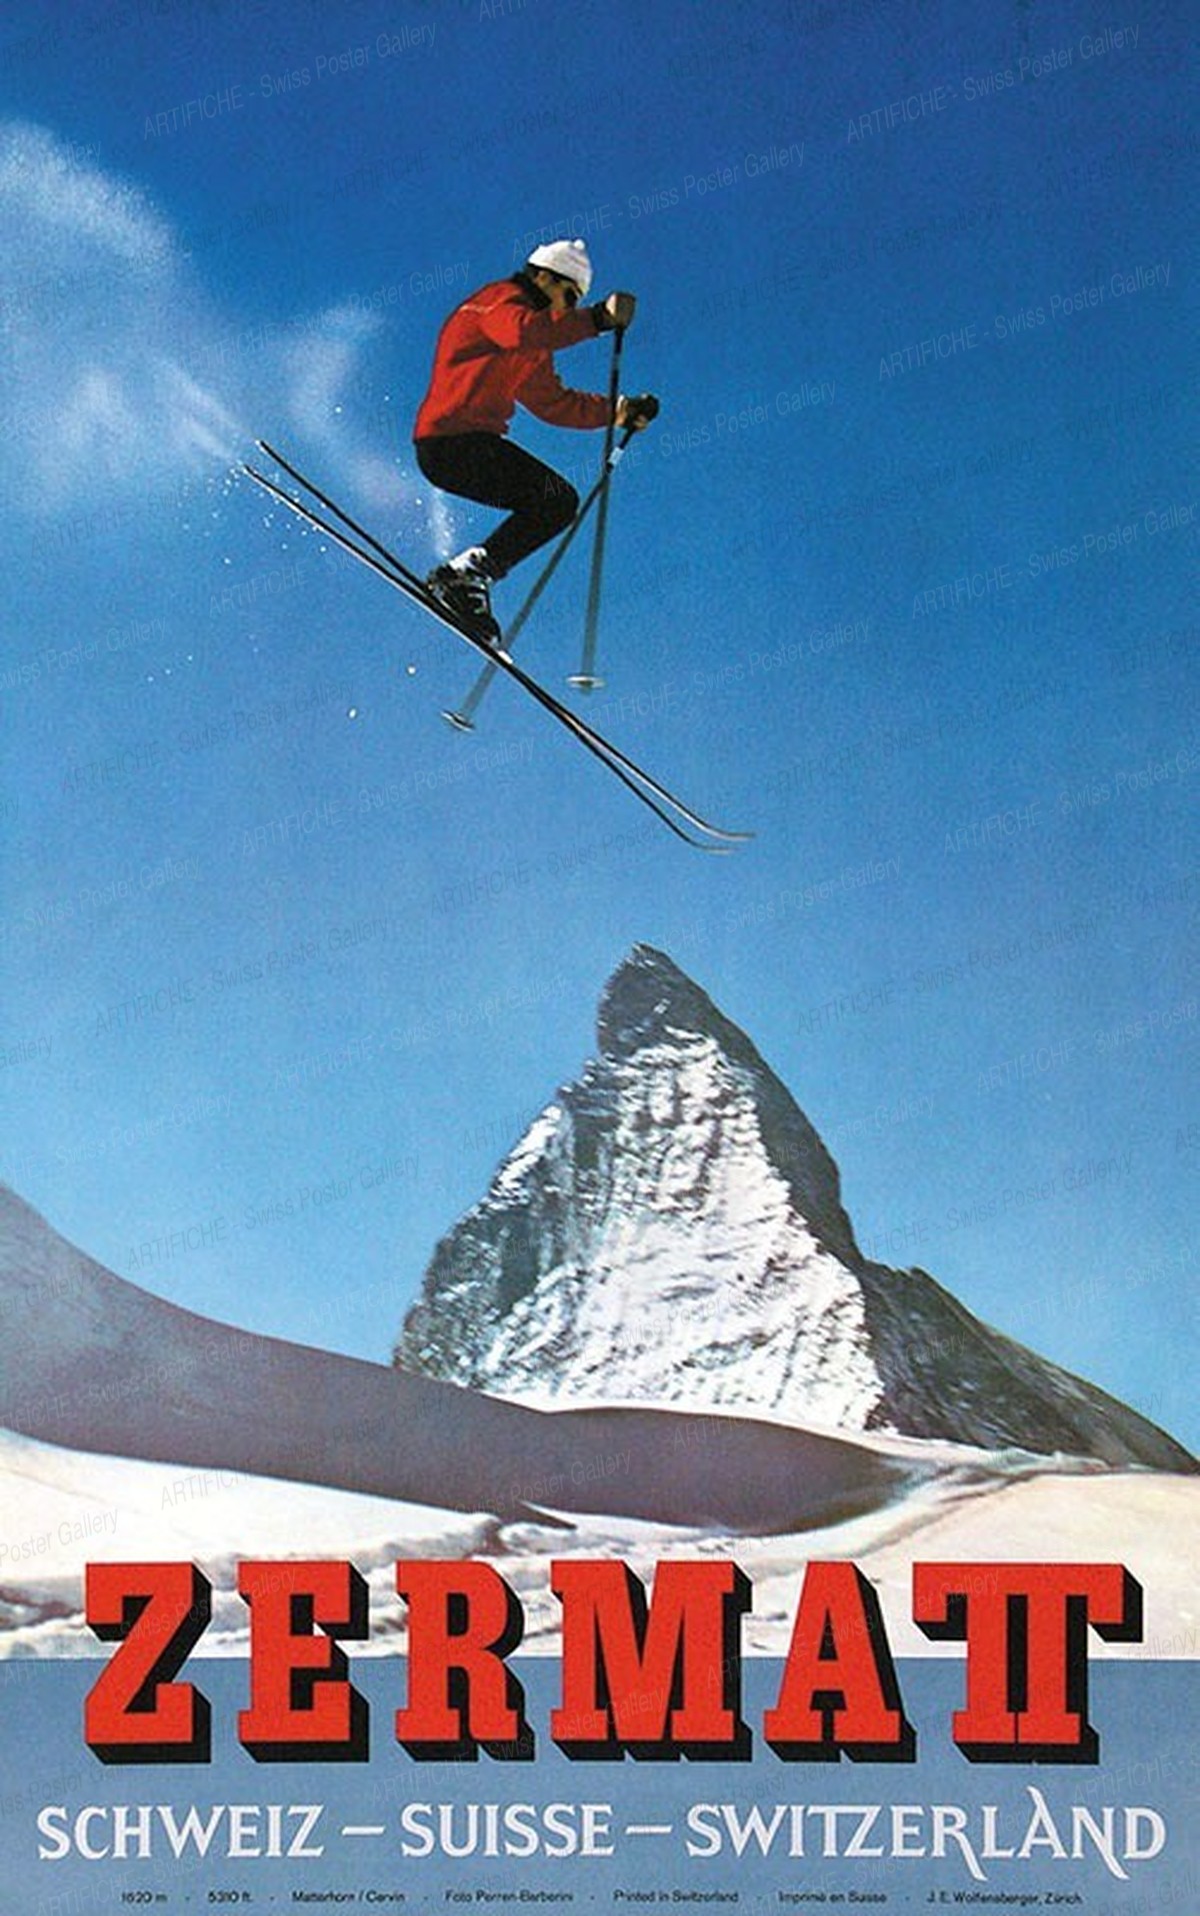 Zermatt – Schweiz – Suisse – Switzerland, Alfred Perren-Barberini